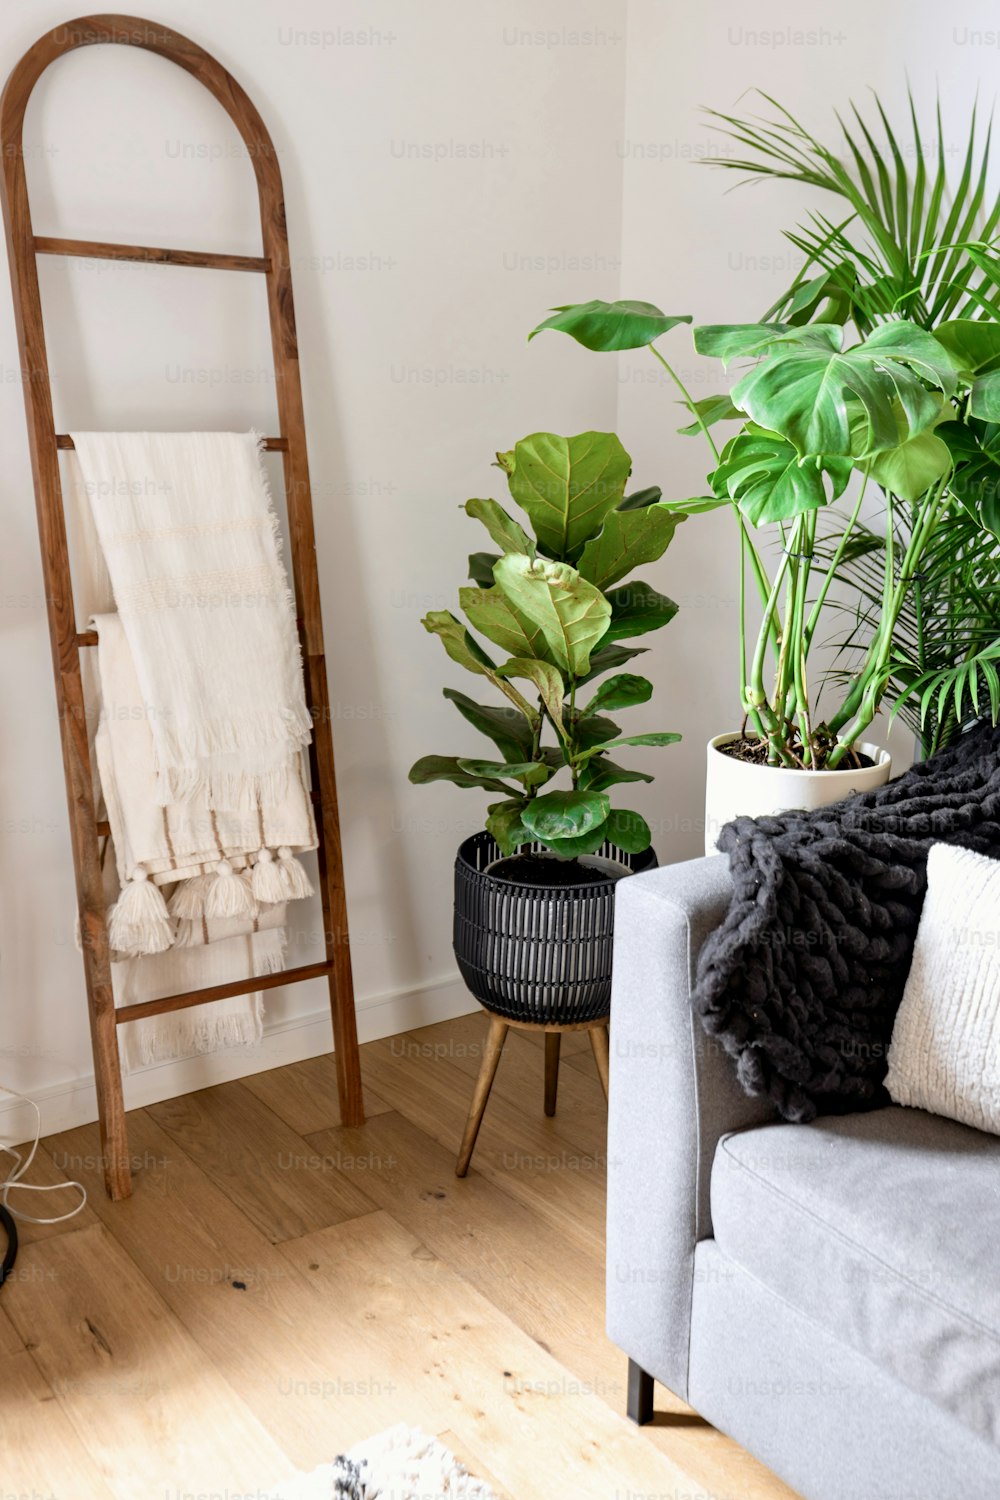 una sala de estar con sofá, silla y plantas en macetas